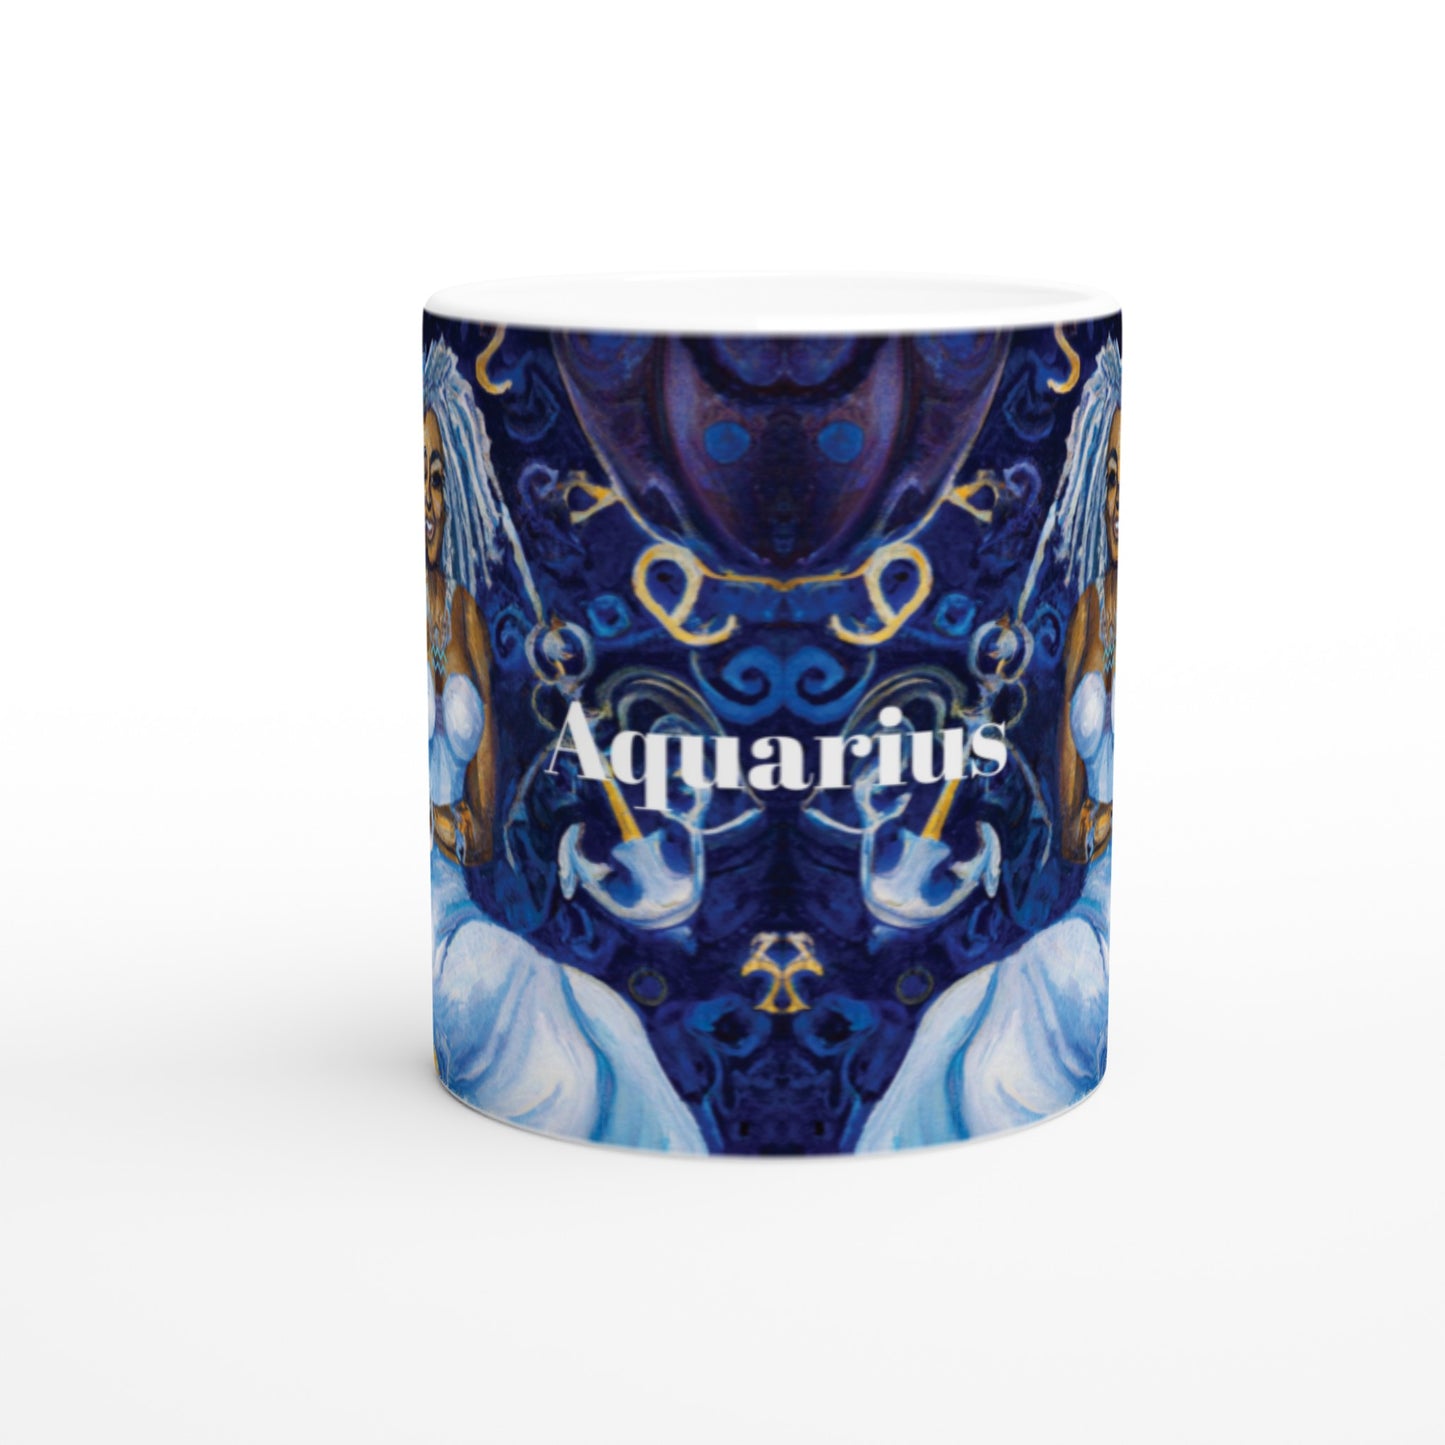 Queenie Aquarius Ceramic Mug -11oz